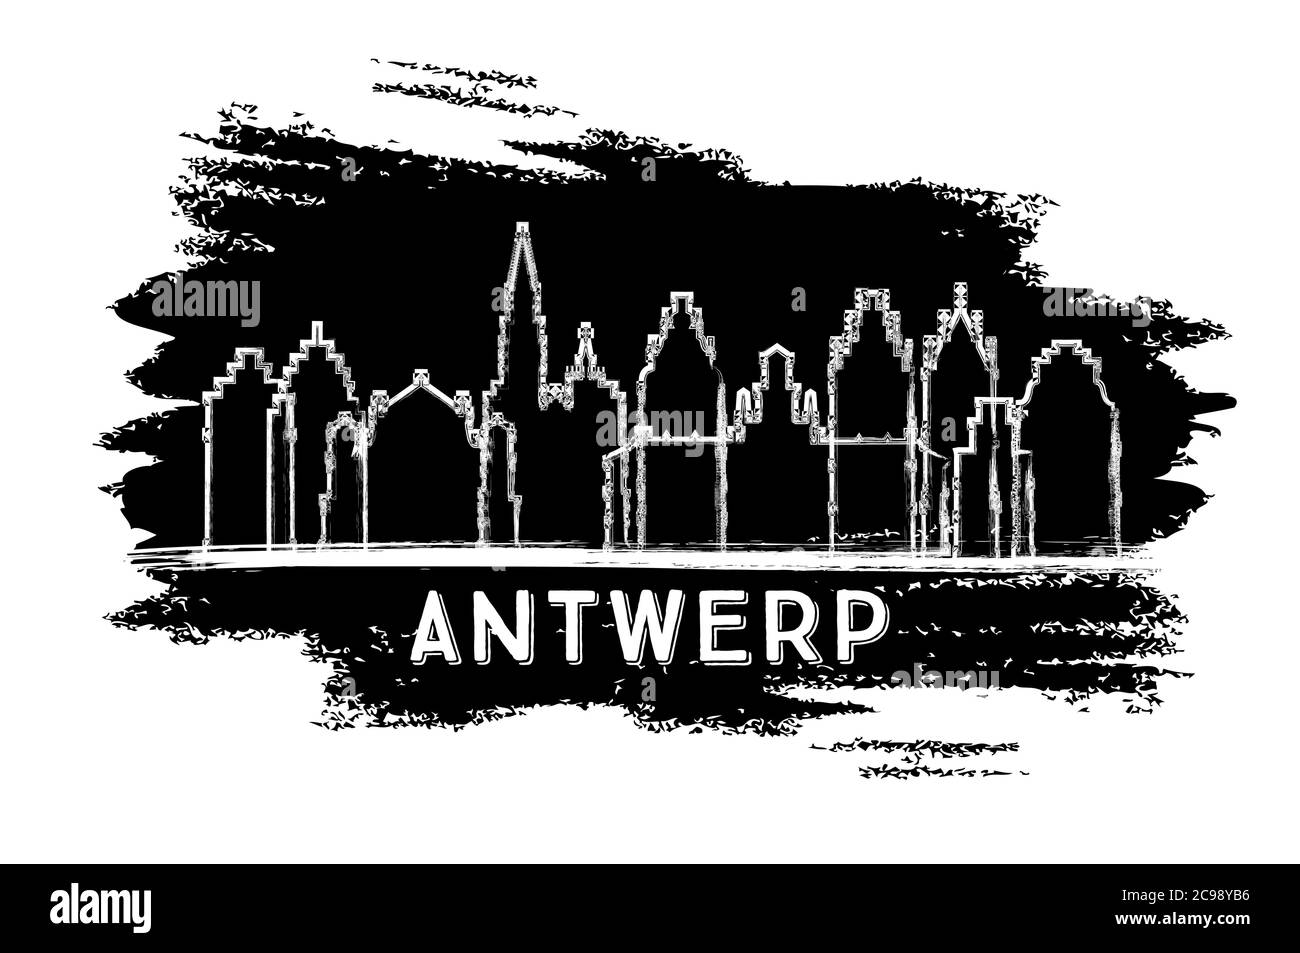 Antwerpen Belgien City Skyline Silhouette. Handgezeichnete Skizze. Business Travel und Tourismus Konzept mit historischer Architektur. Vektorgrafik. Stock Vektor